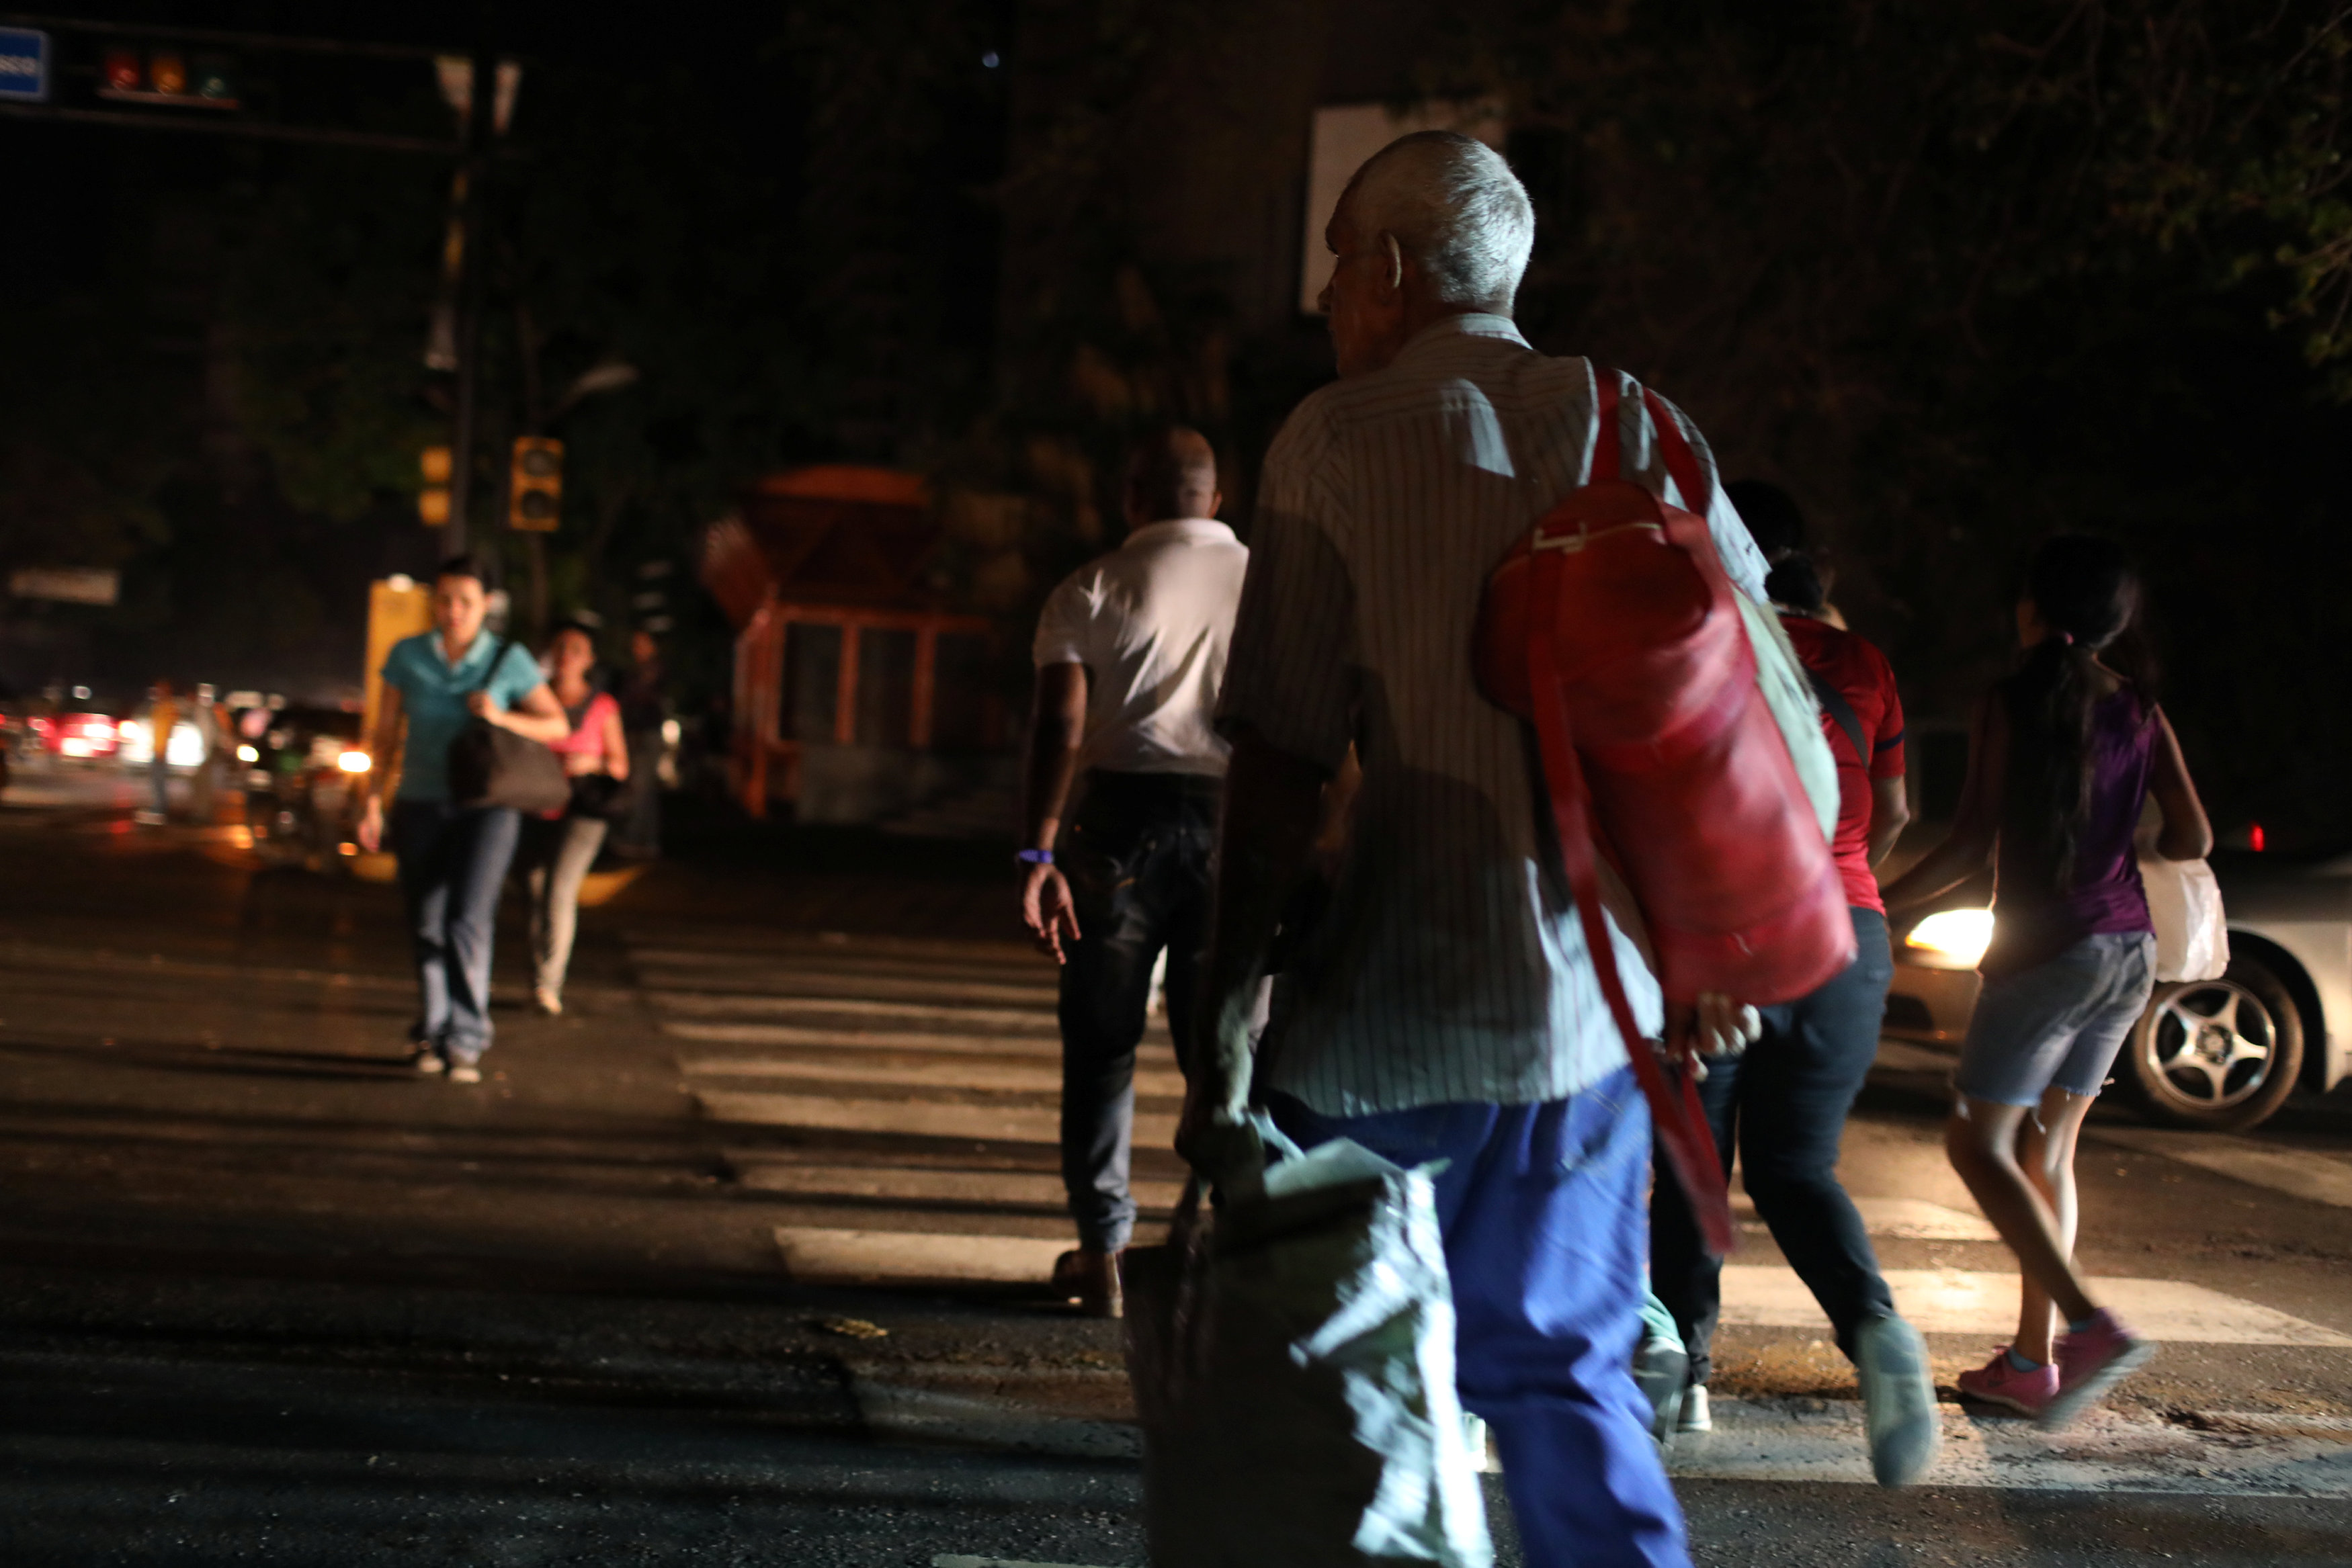 NO lo llame apagón… es solo “un inconveniente”, así reporta Corpoelec el caos eléctrico en Zulia #29Mar